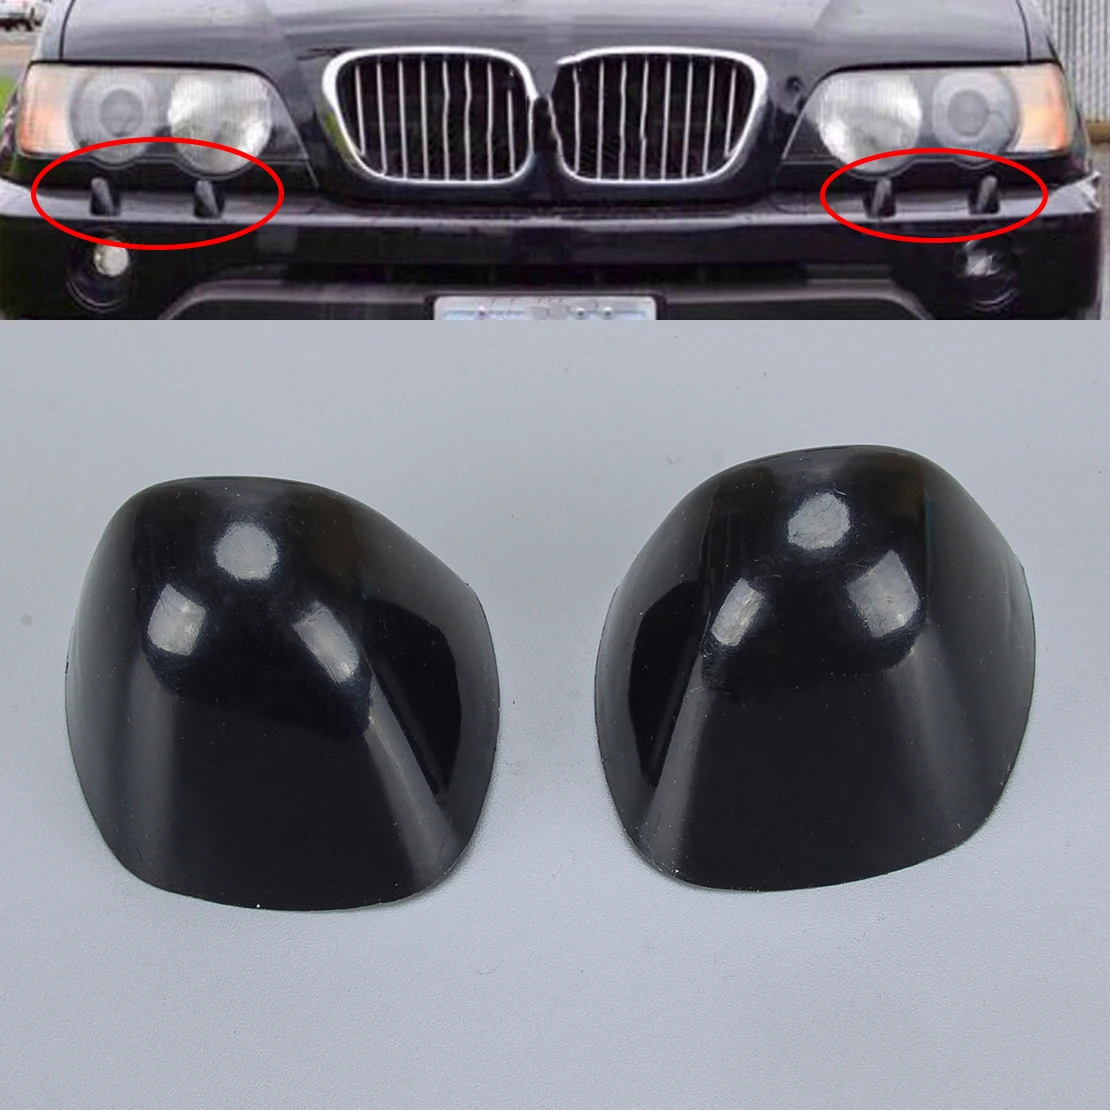 

61677145235, 61677145236, 1 пара, крышка для омывателя передней фары автомобиля, подходит для BMW X5 E53 LCI 2003, 2004, 2005, 2006, черный пластик